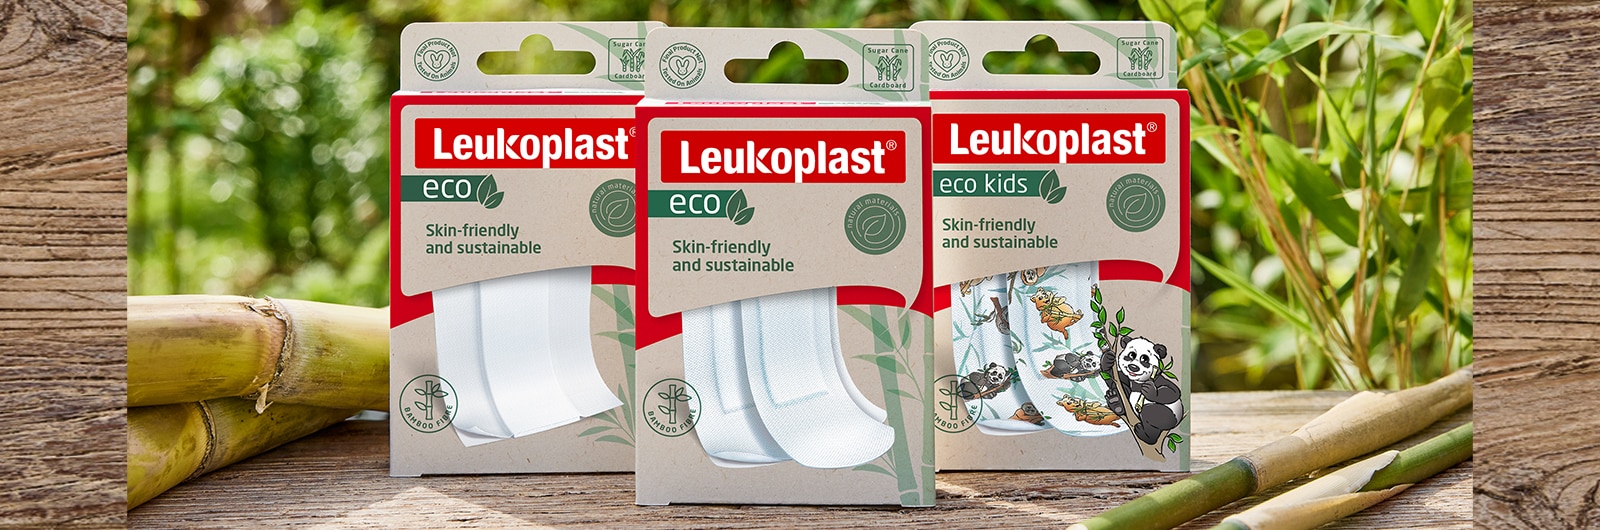 Obrázek ukazující obvazy Leukoplast eco – délku, pásky a dětskou verzi